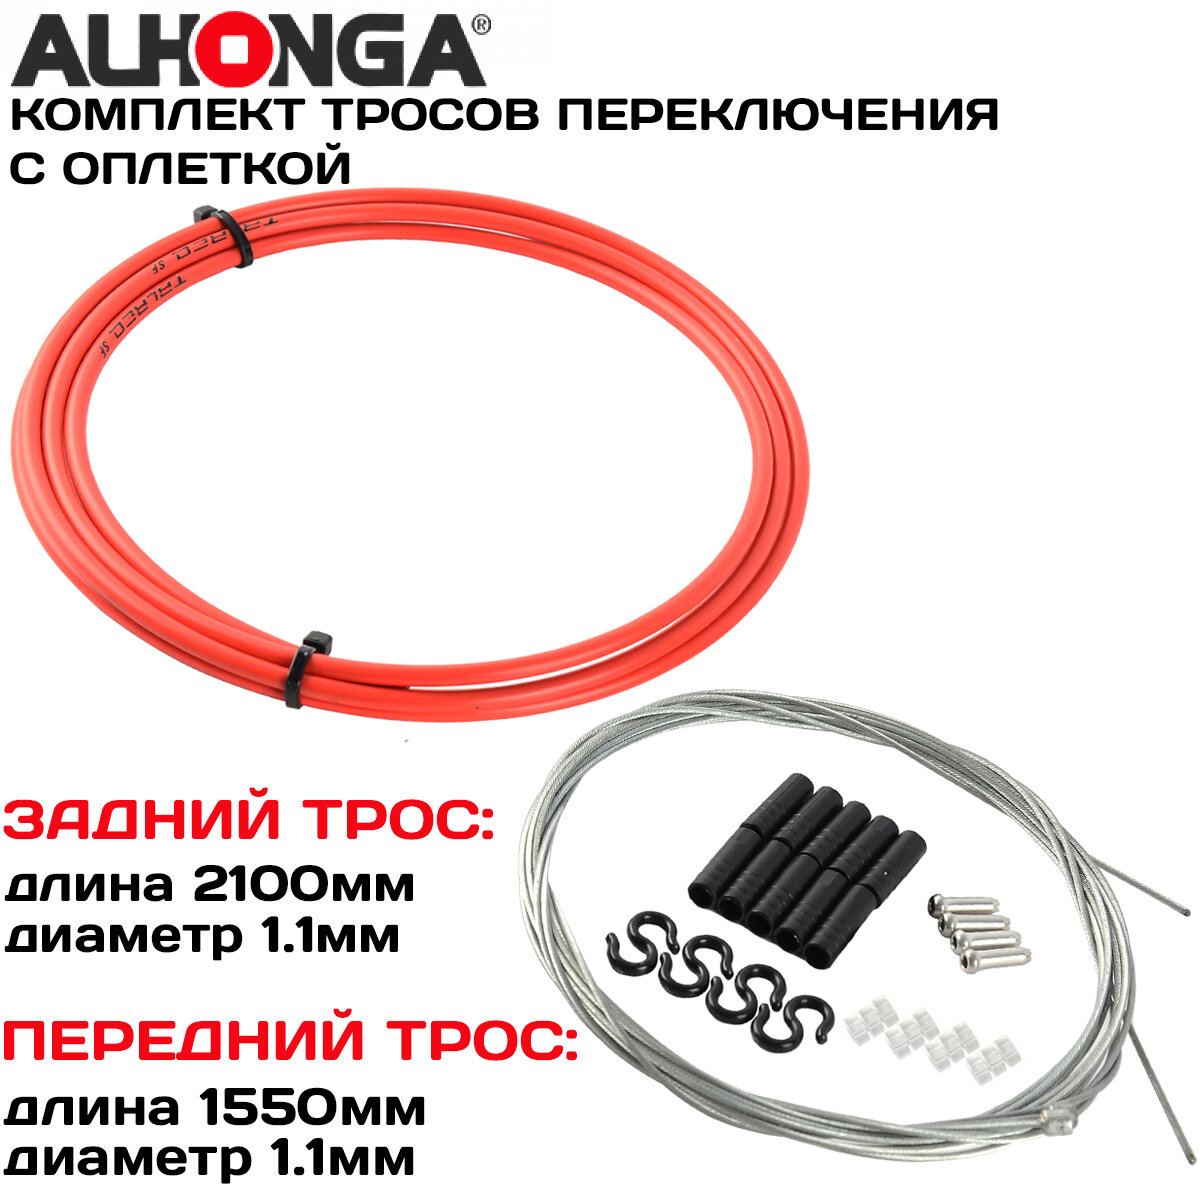 Комплект тросов переключения (2шт) Alhonga МТВ с оплеткой концевики оплетки и троса красный